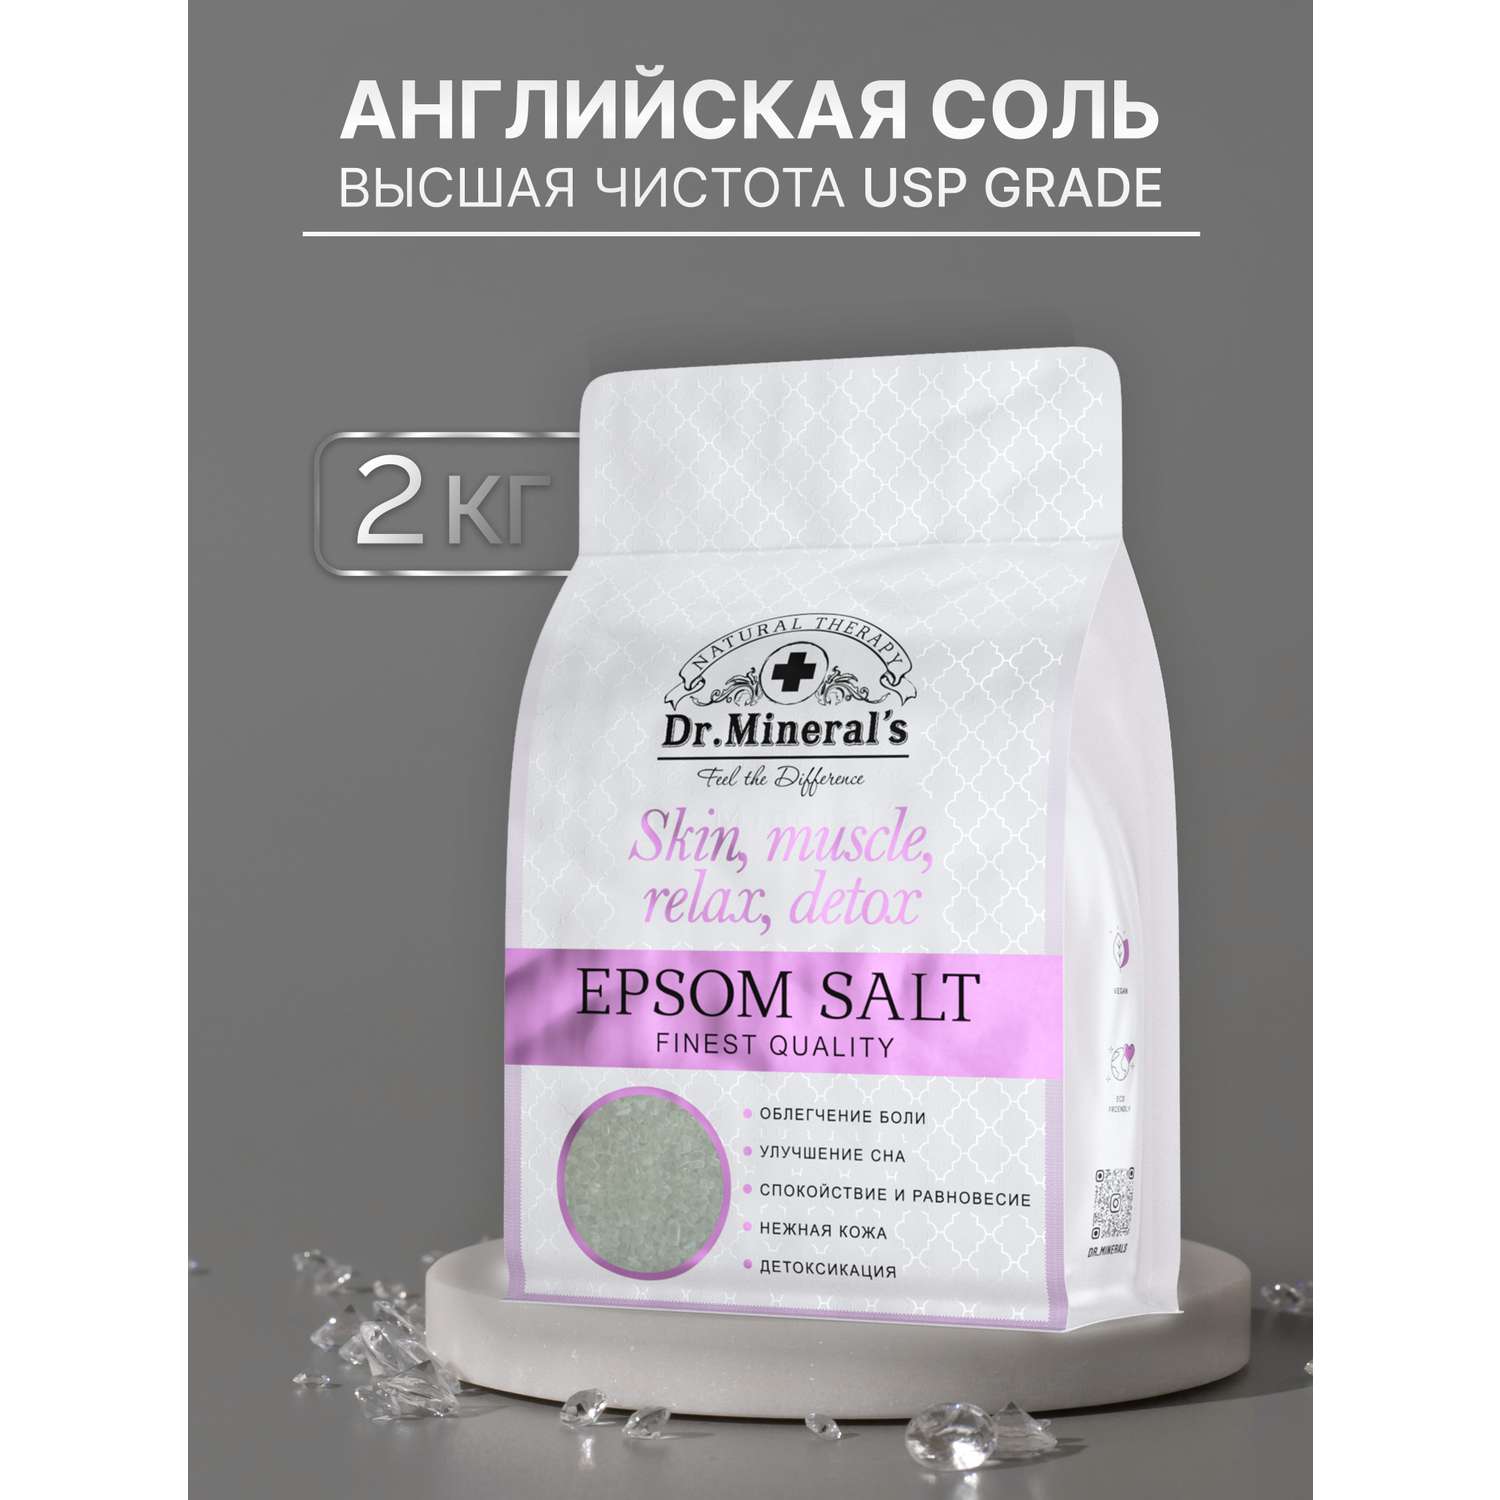 Английская соль для ванны Dr.Minerals соль косметологического качества 2 кг - фото 2